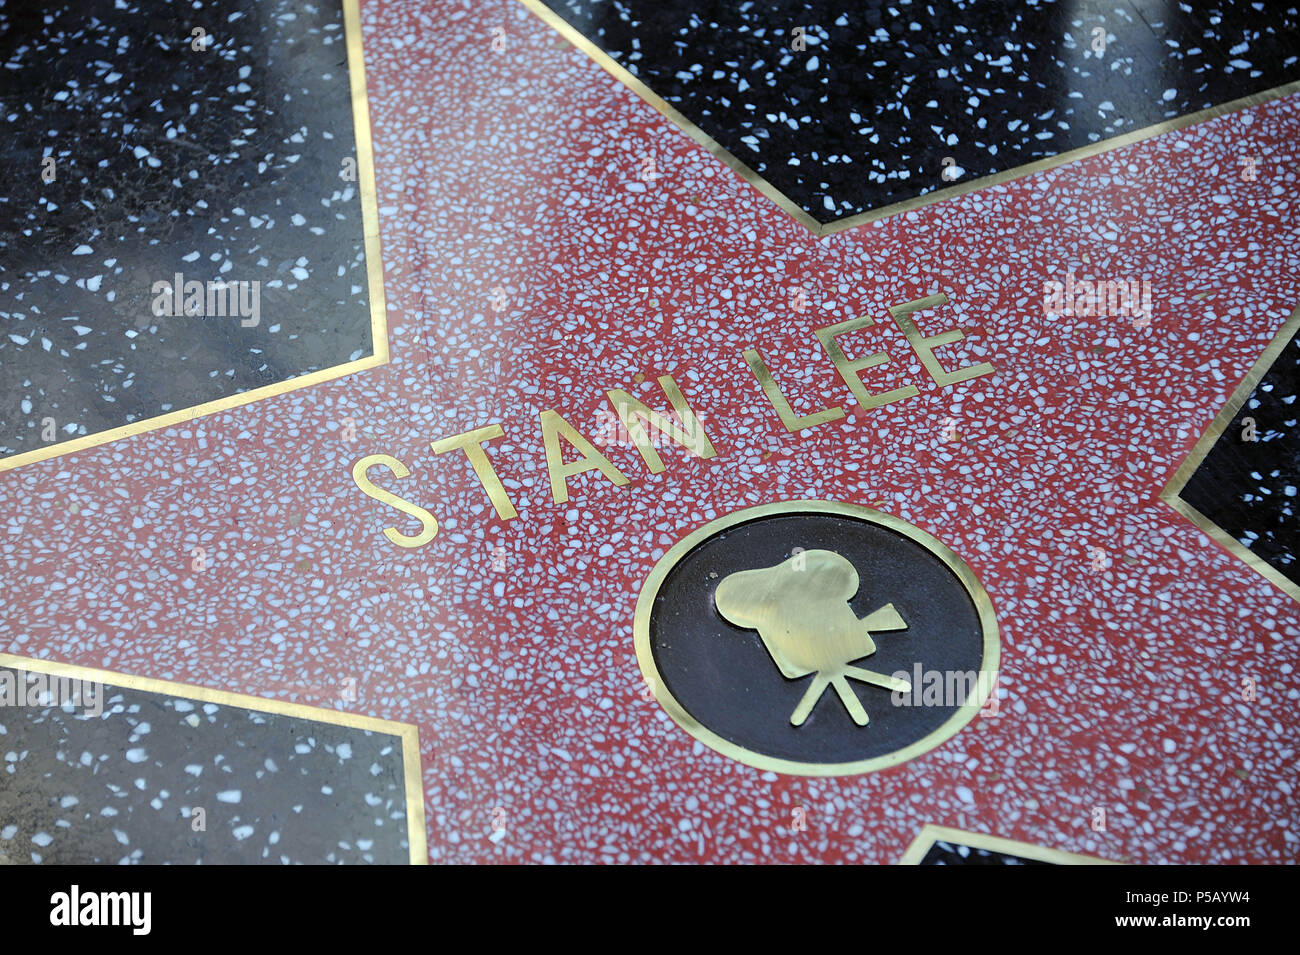 Stan Lee honoré avec une étoile sur le Hollywood Walk of Fame à Los Angeles.Stan Lee  WOF 10 Événement dans la vie d'Hollywood, Californie - Red Carpet Event, USA, Cinéma, Célébrités, photographie, Bestof, Arts, Culture et divertissement, Célébrités, Mode Topix Meilleur de Hollywood, la vie, événement dans la vie d'Hollywood, Californie - cinéma, télévision, célébrités, célébrités de la musique, Topix Bestof, Arts, Culture et loisirs, photographie, tsuni@Gamma-USA.com , Tsuni enquête de crédit / USA, honoré par une étoile sur le Hollywood Walk ofFame à Los Angeles, 2011 Banque D'Images